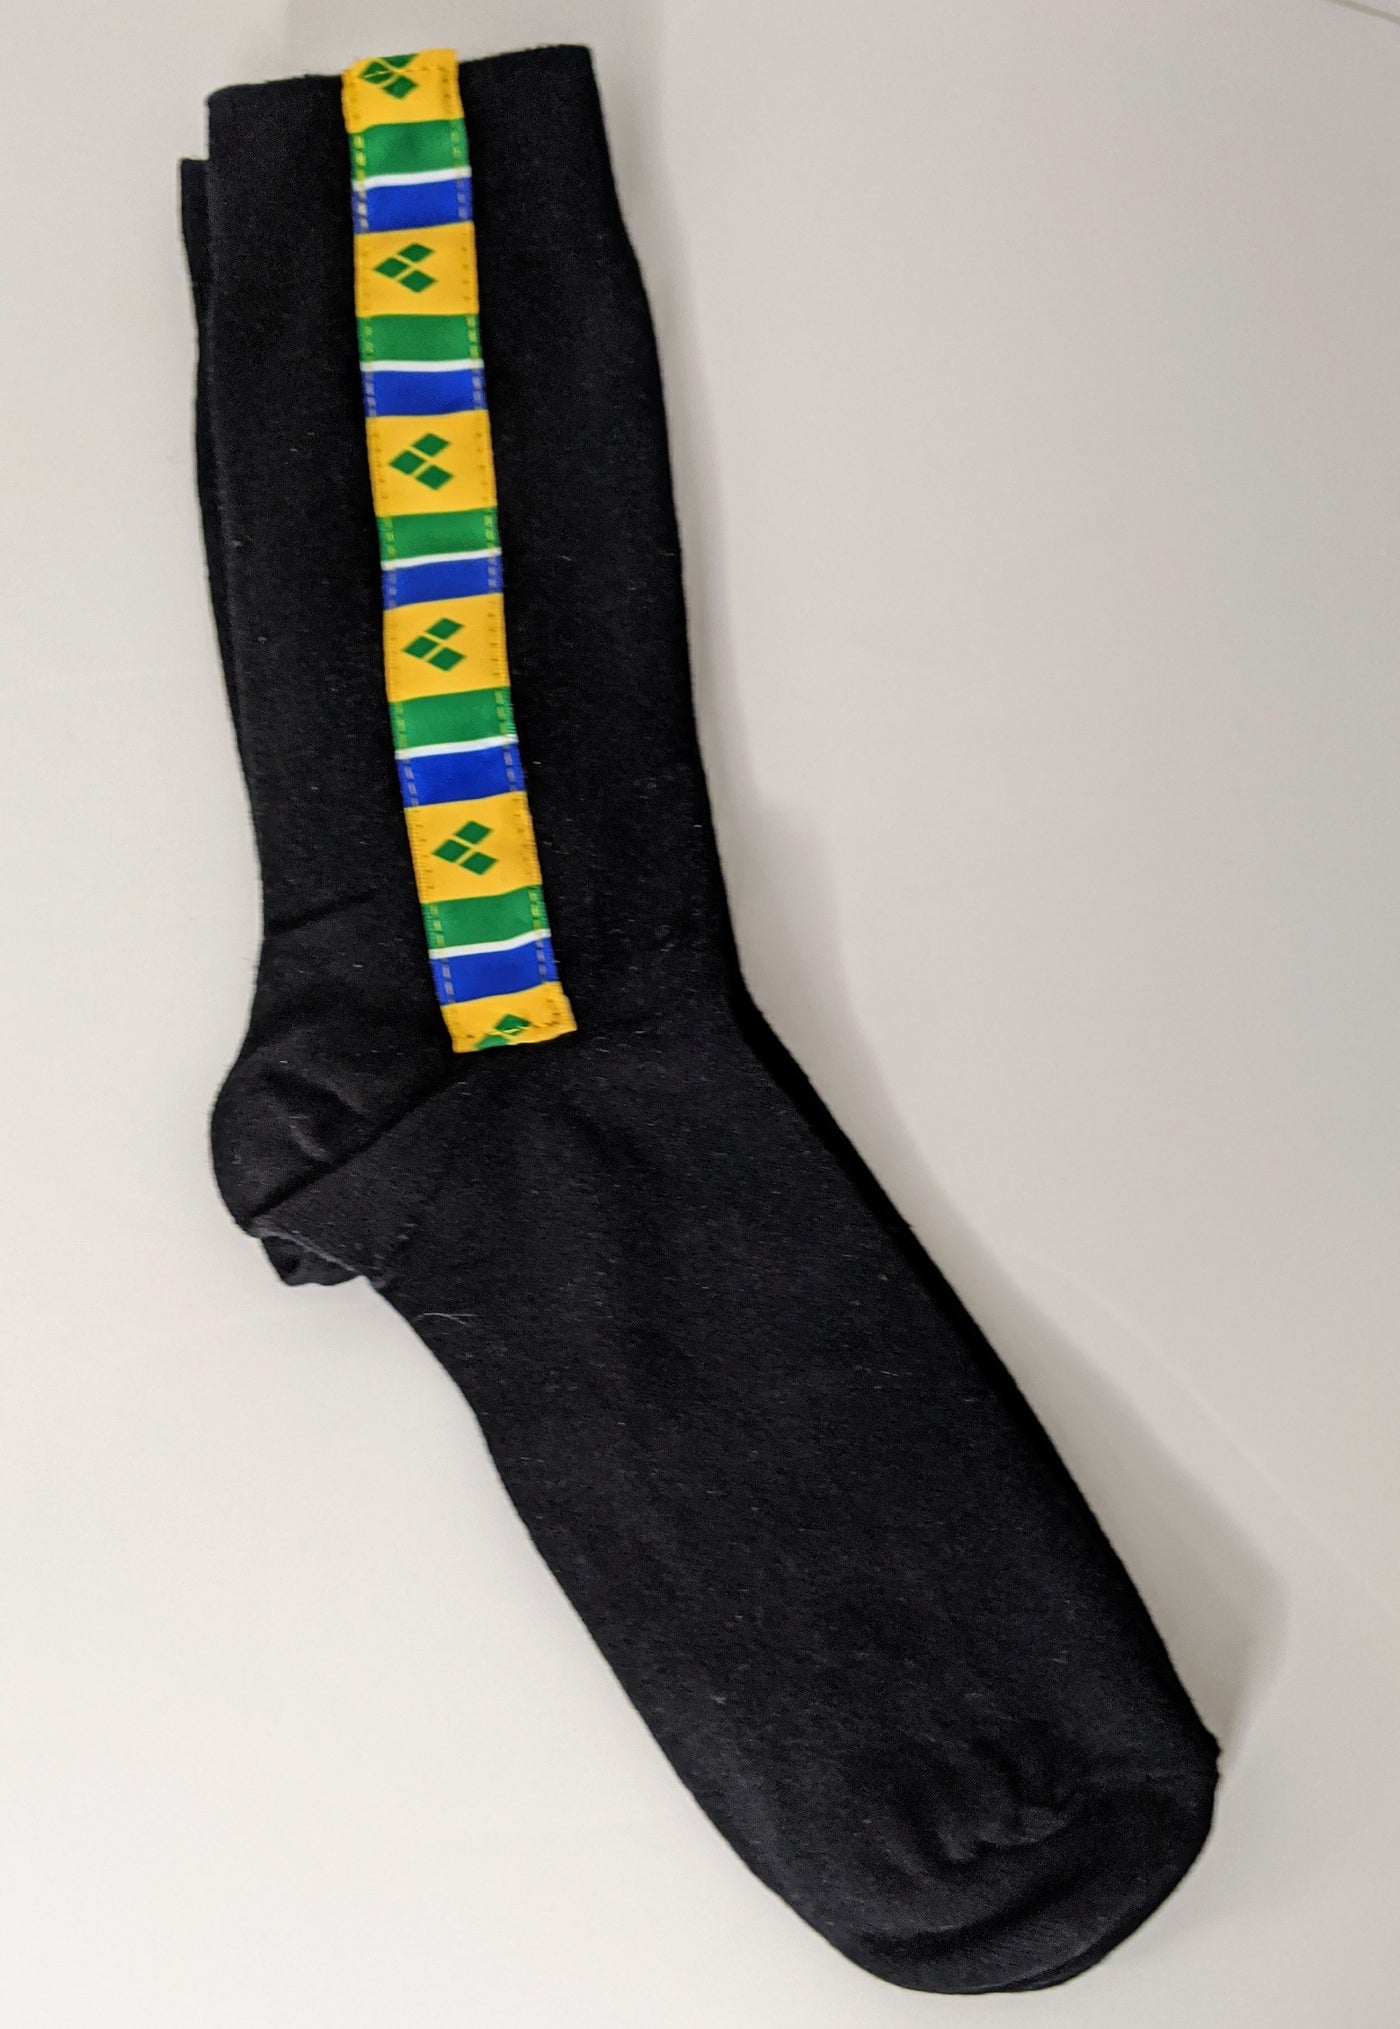 Socks with St Vincent Flag